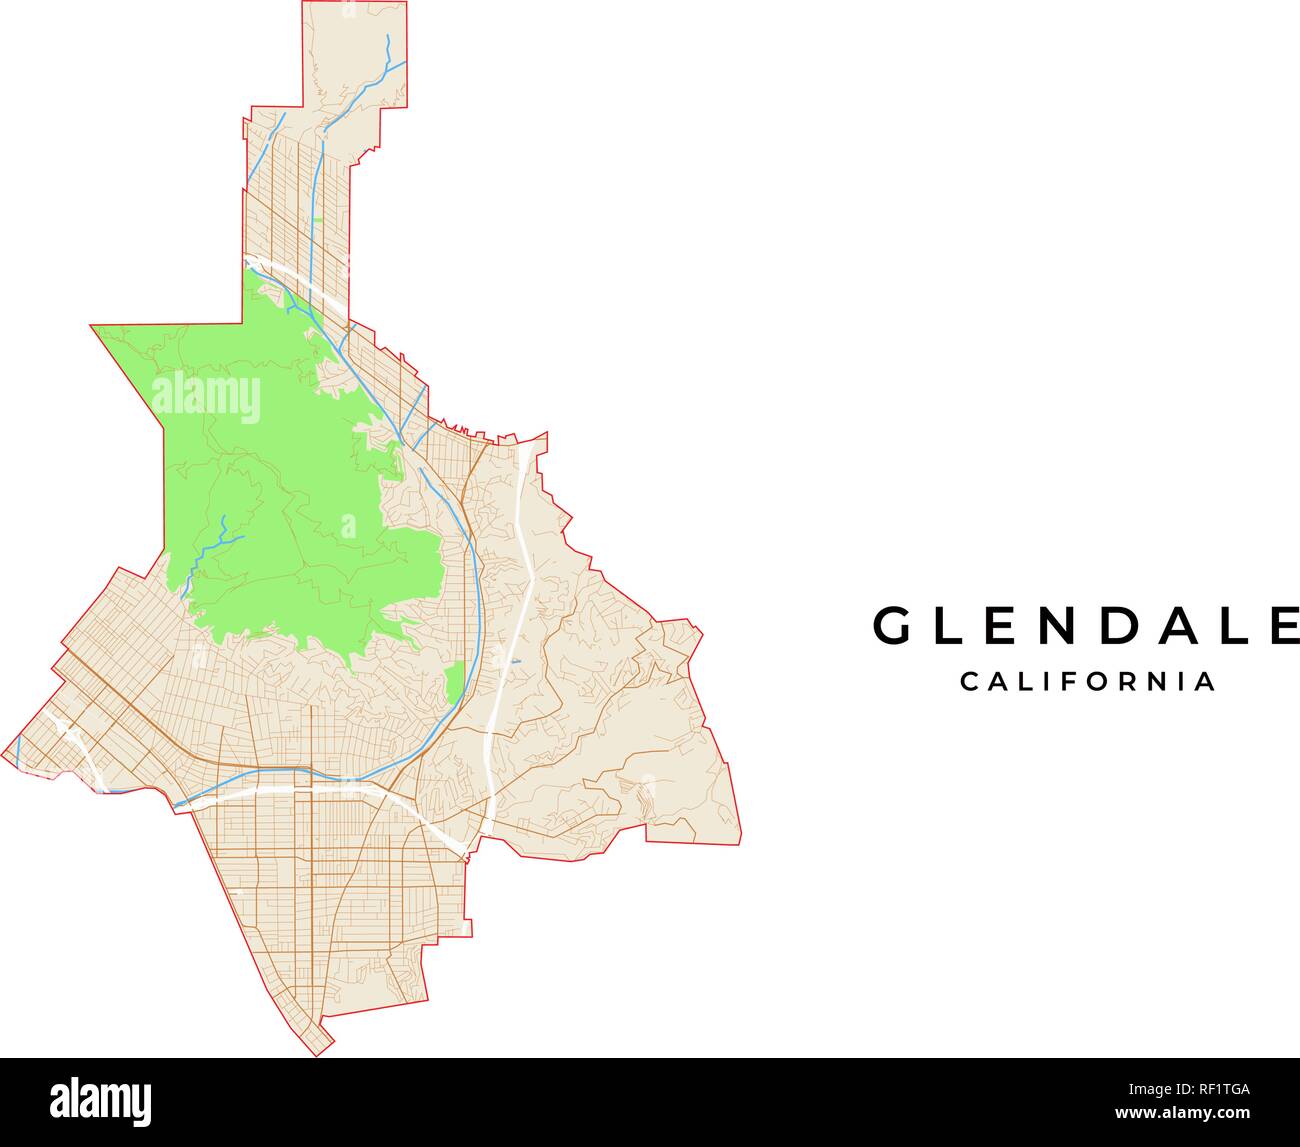 Vektorkarte von Glendale, Kalifornien, USA. Verschiedene Farben für Straßen, Parks, Wasser und Grenze. Stock Vektor